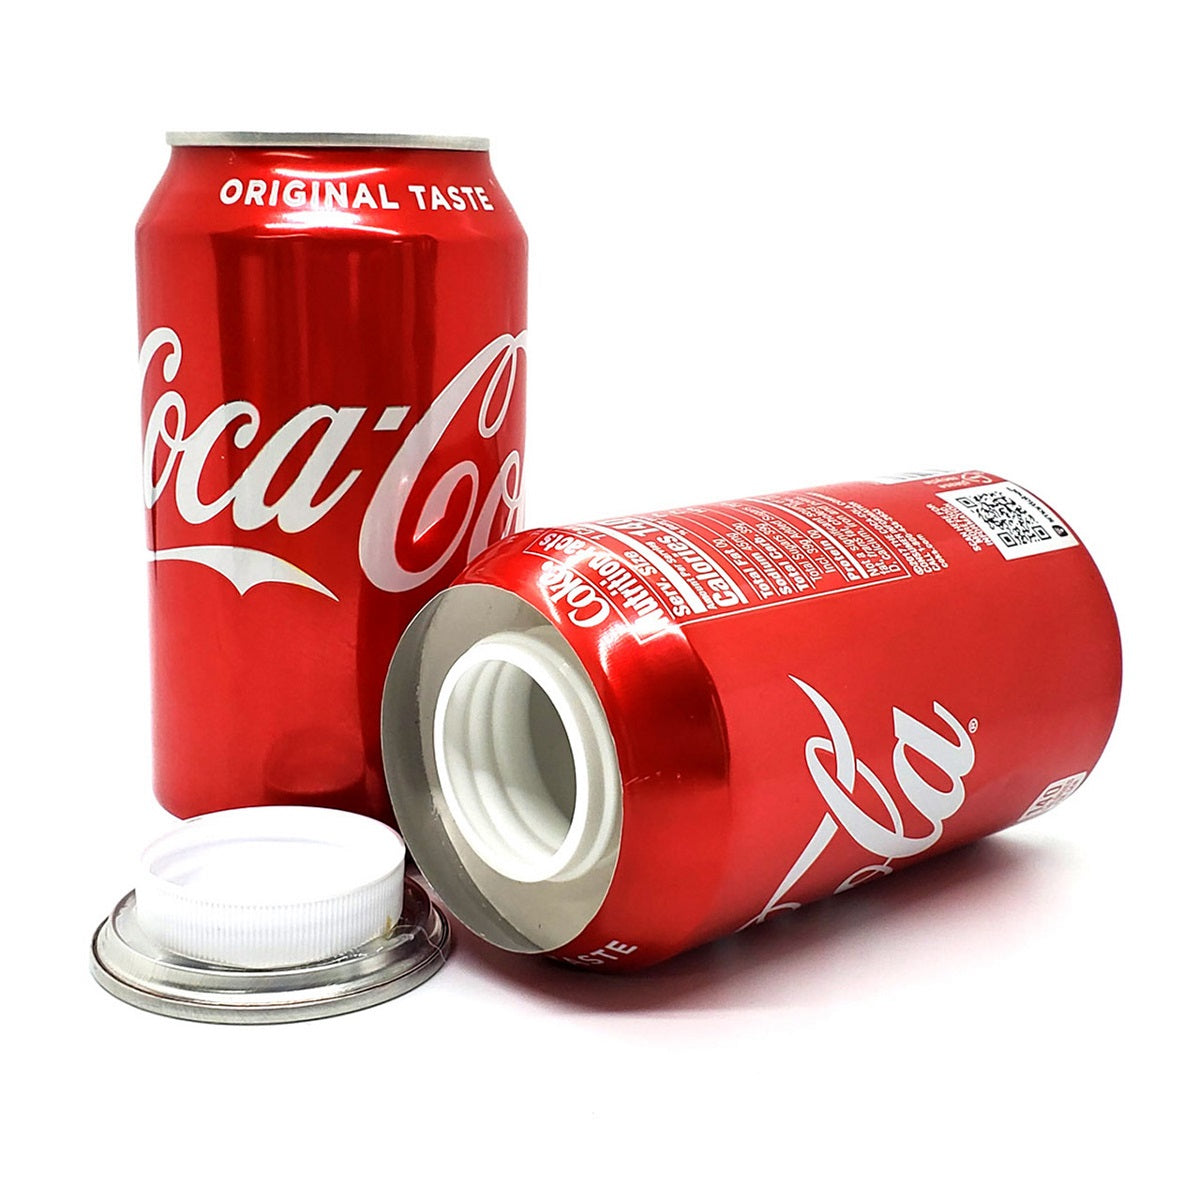 Cachette ( Stash Can ) coca cola pour votre weed